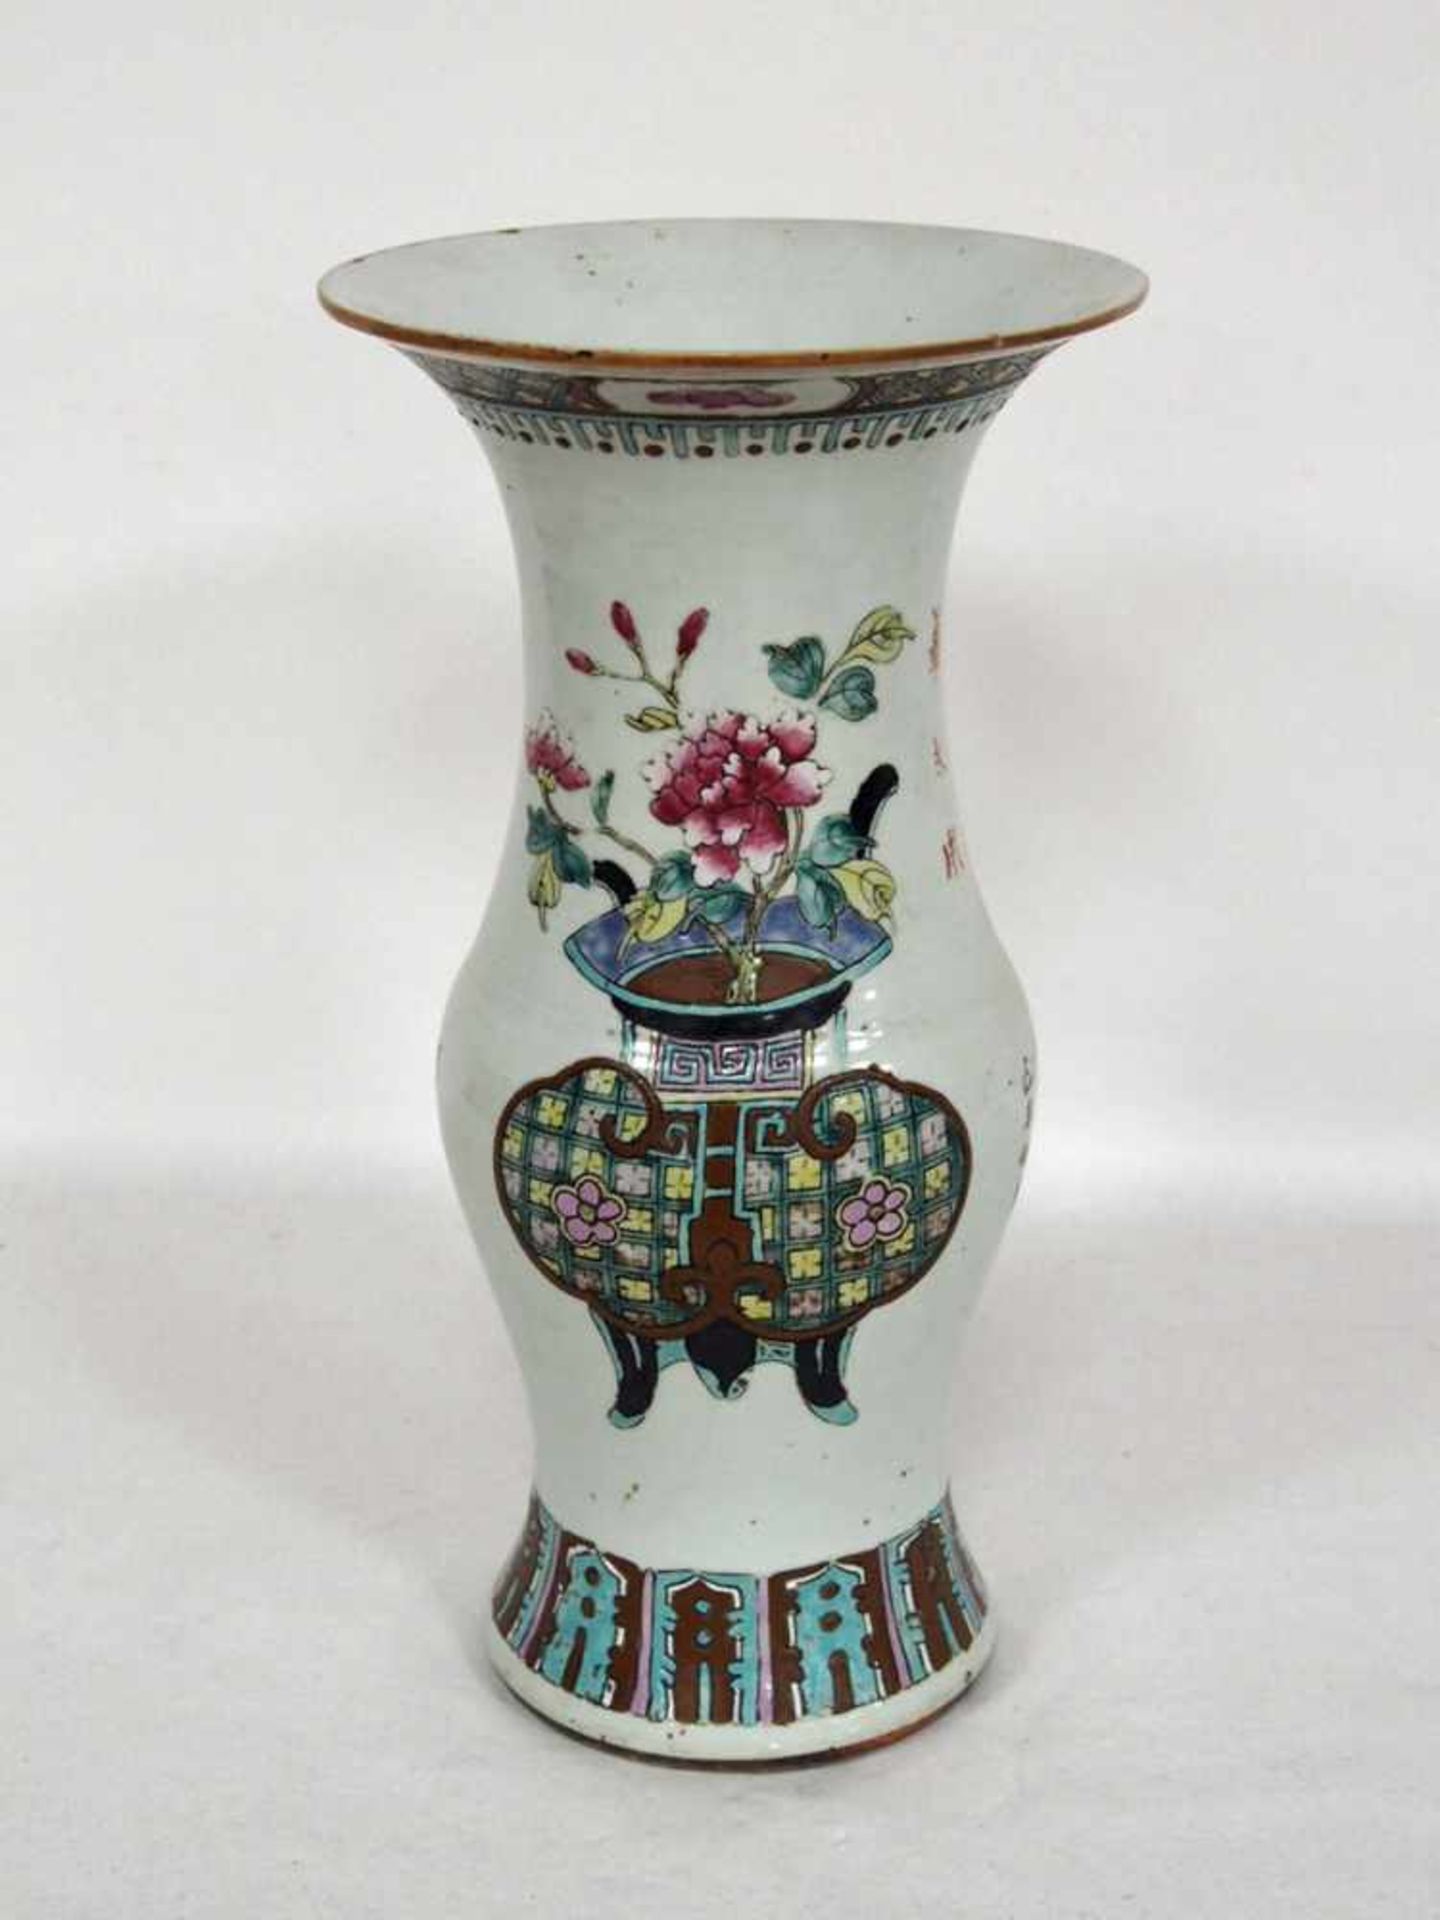 VaseChina, um 1900, Porzellan, Blumendekor, Gedichte, Höhe 37 cm, bodenseitig gemarkt